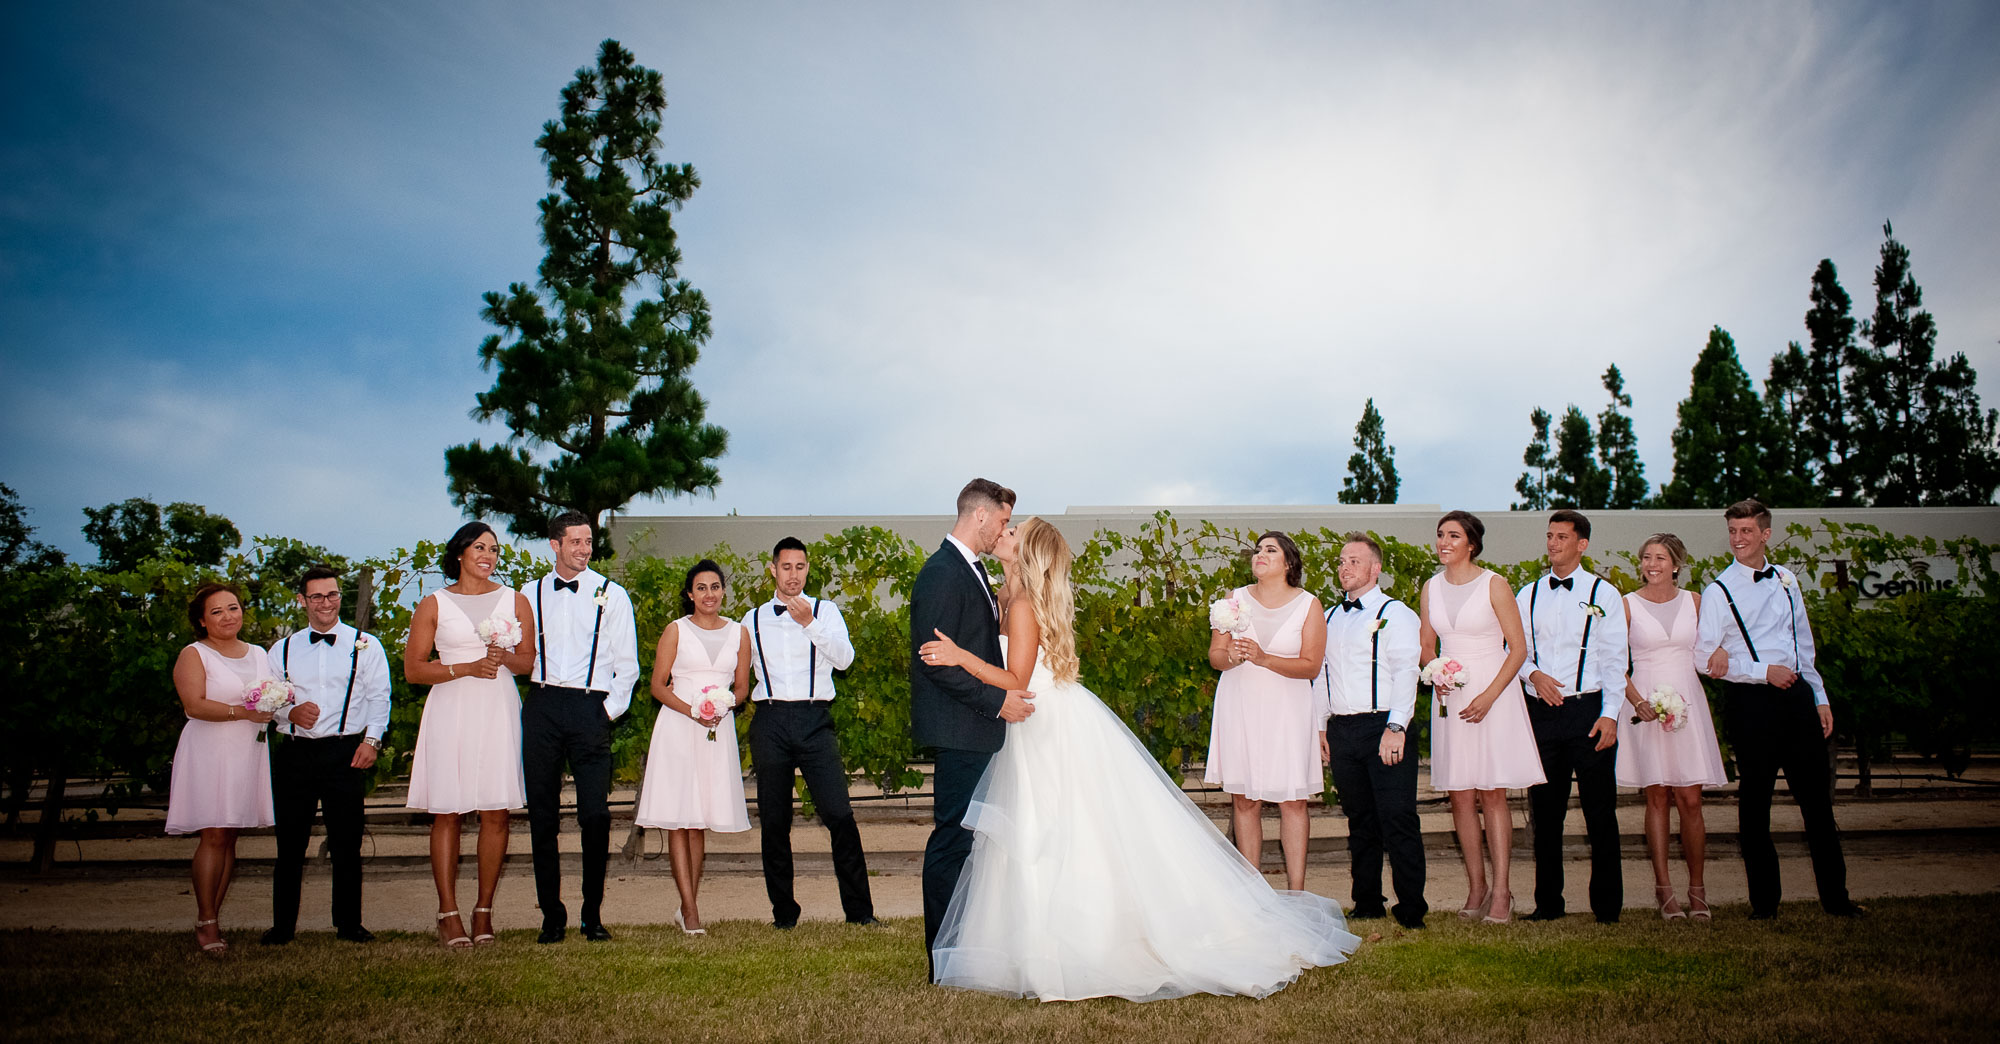 Tasha & Buddy – Turnip Rose Promenade & Gardens Wedding featured slider image